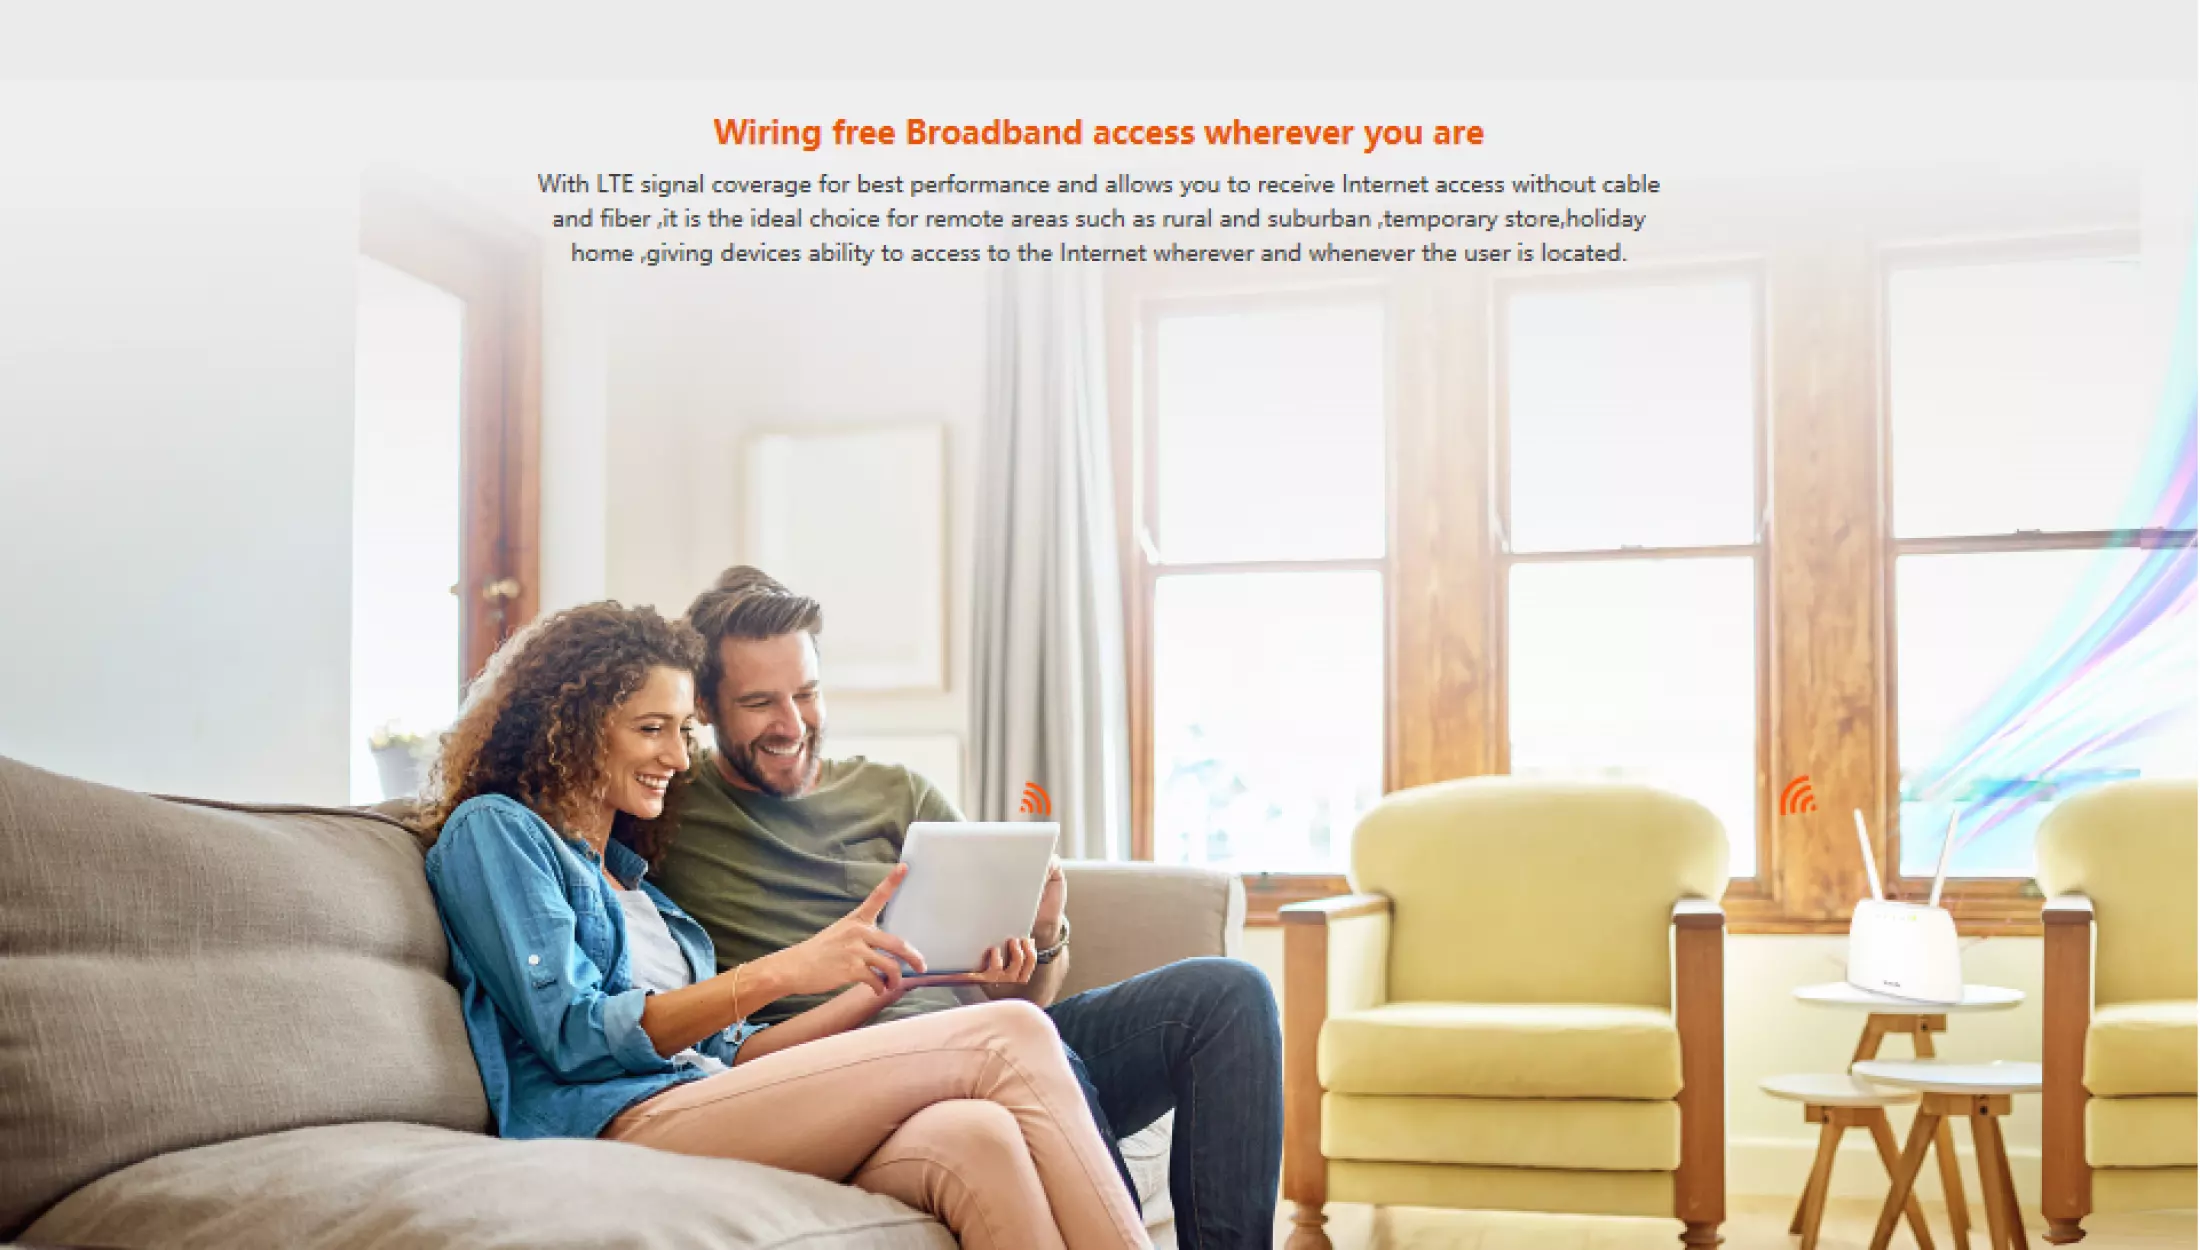 เกี่ยวกับ Tenda 4G06 LTE WiFi Routerเร้าเตอร์ใส่ซิมเชื่อมต่อได้ 2 รูปแบบ"เชื่อมต่อสาย LAN เพื่อใช้งานร่วมกับ broadband internet ฟรี ซิมเทพ 20Mbps*